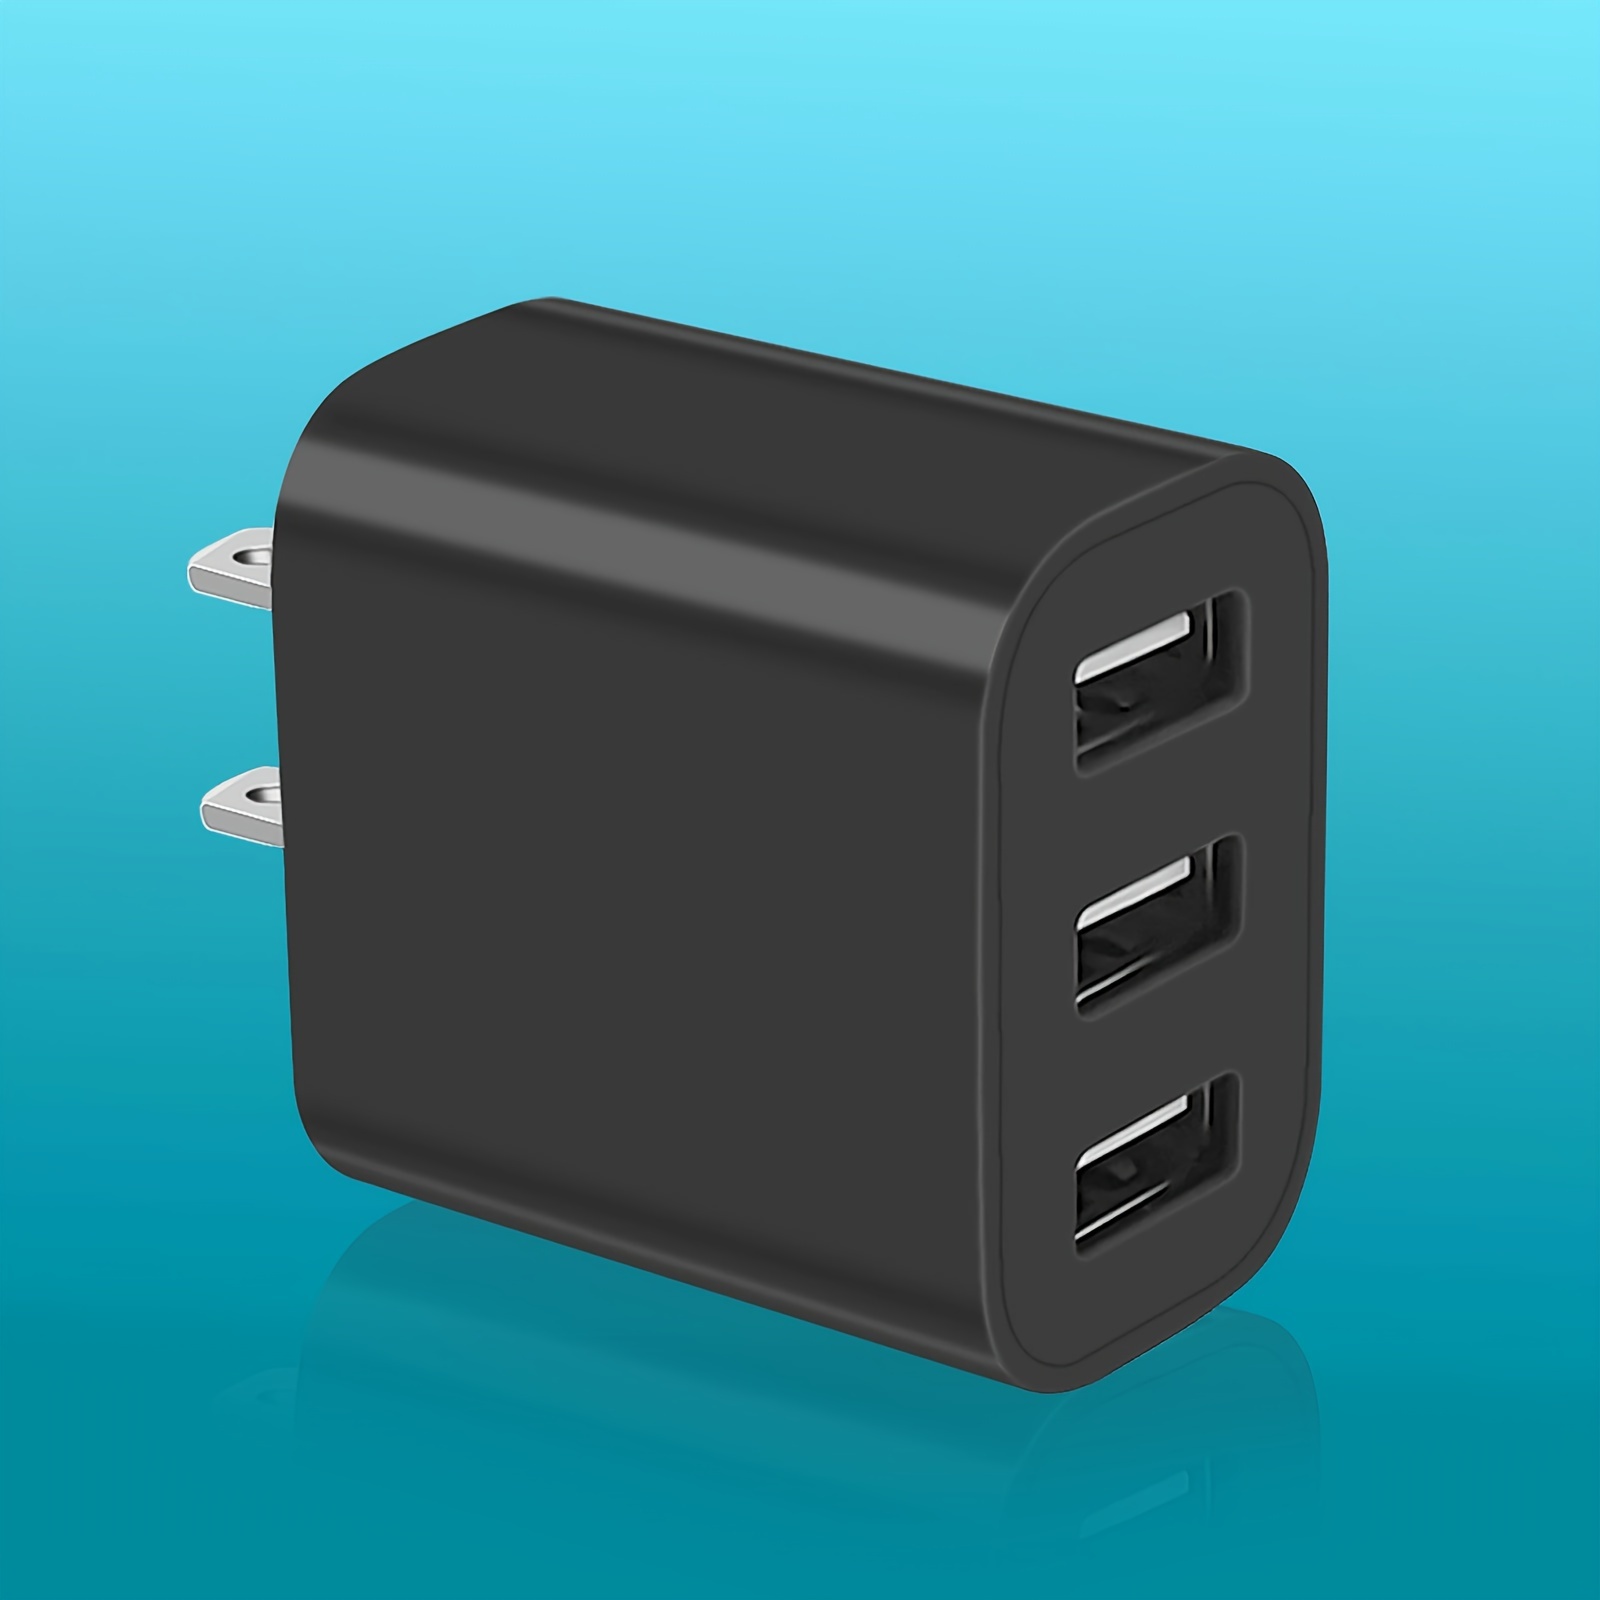  Pixel 8 7 Bloque de carga rápida, paquete de 2 cajas de cargador  USB C de doble puerto de 20 W, cargador de pared, adaptador de corriente  para Google Pixel 8